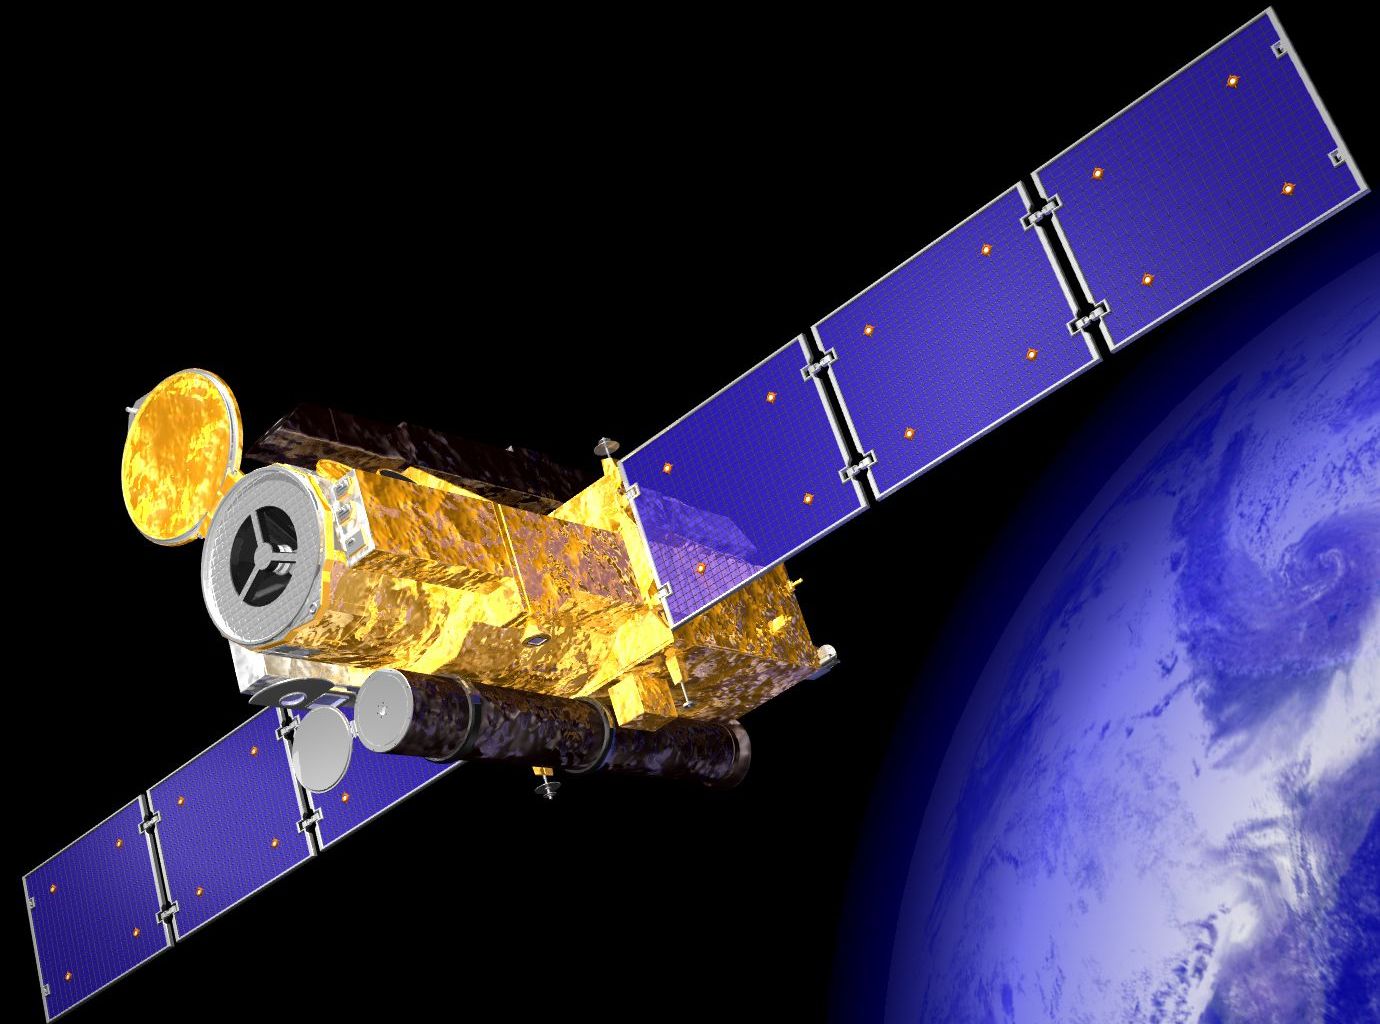 Die japanische Raumsonde Hinode zur Erkundung der Sonne ist 2006 gestartet und sendet bis heute Daten aus einer Umlaufbahn der Sonne auf die Erde. Die Mission beobachtet jene Regionen auf der Sonne, die Sonneneruptionen und Solarwind hervorbringen. Louise Harra war und ist massgeblich an der Mission beteiligt.